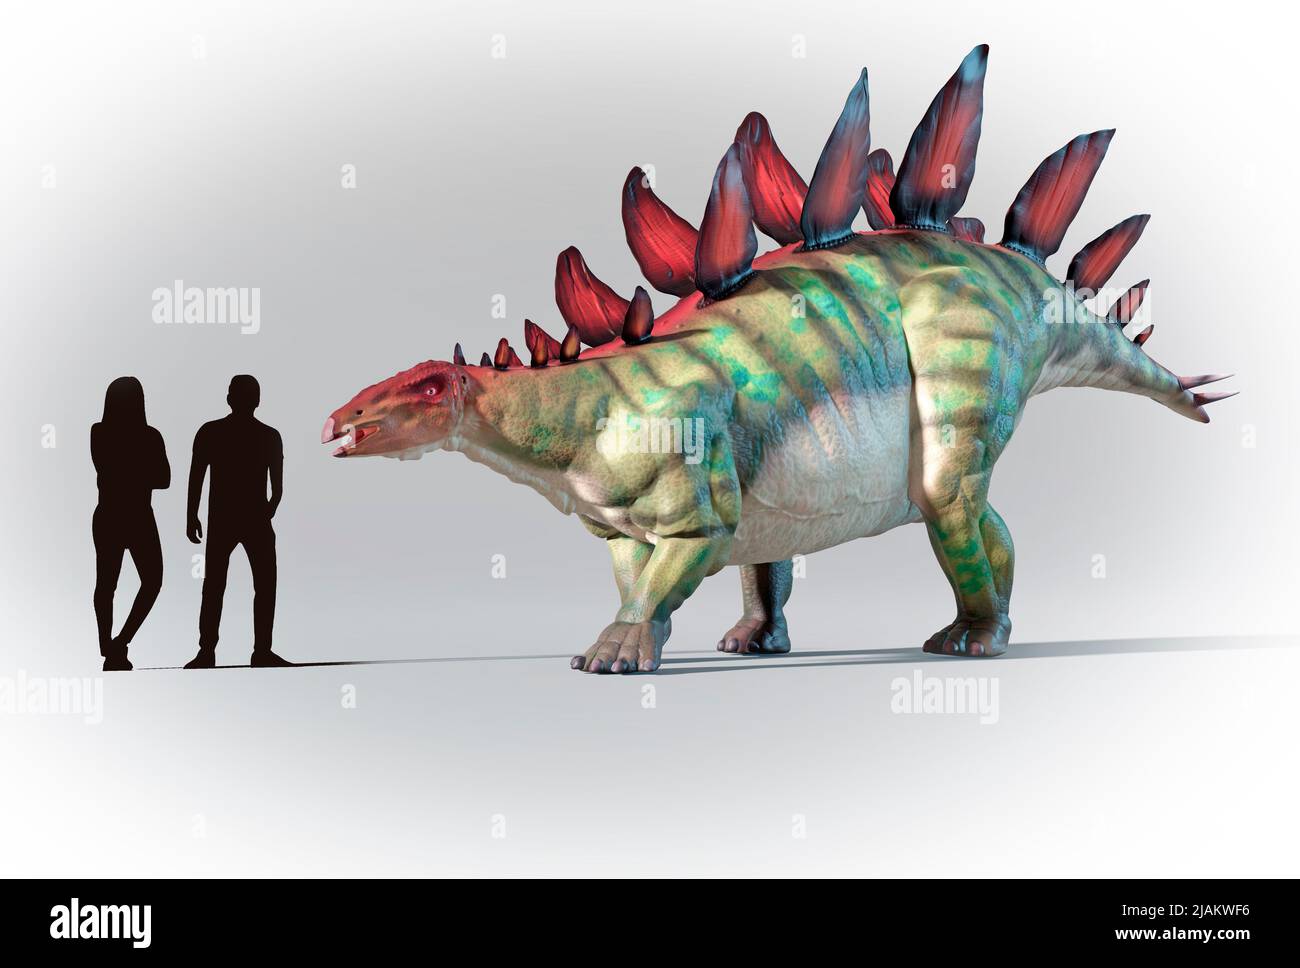 Los humanos se compararon en escala con Stegosaurus Foto de stock